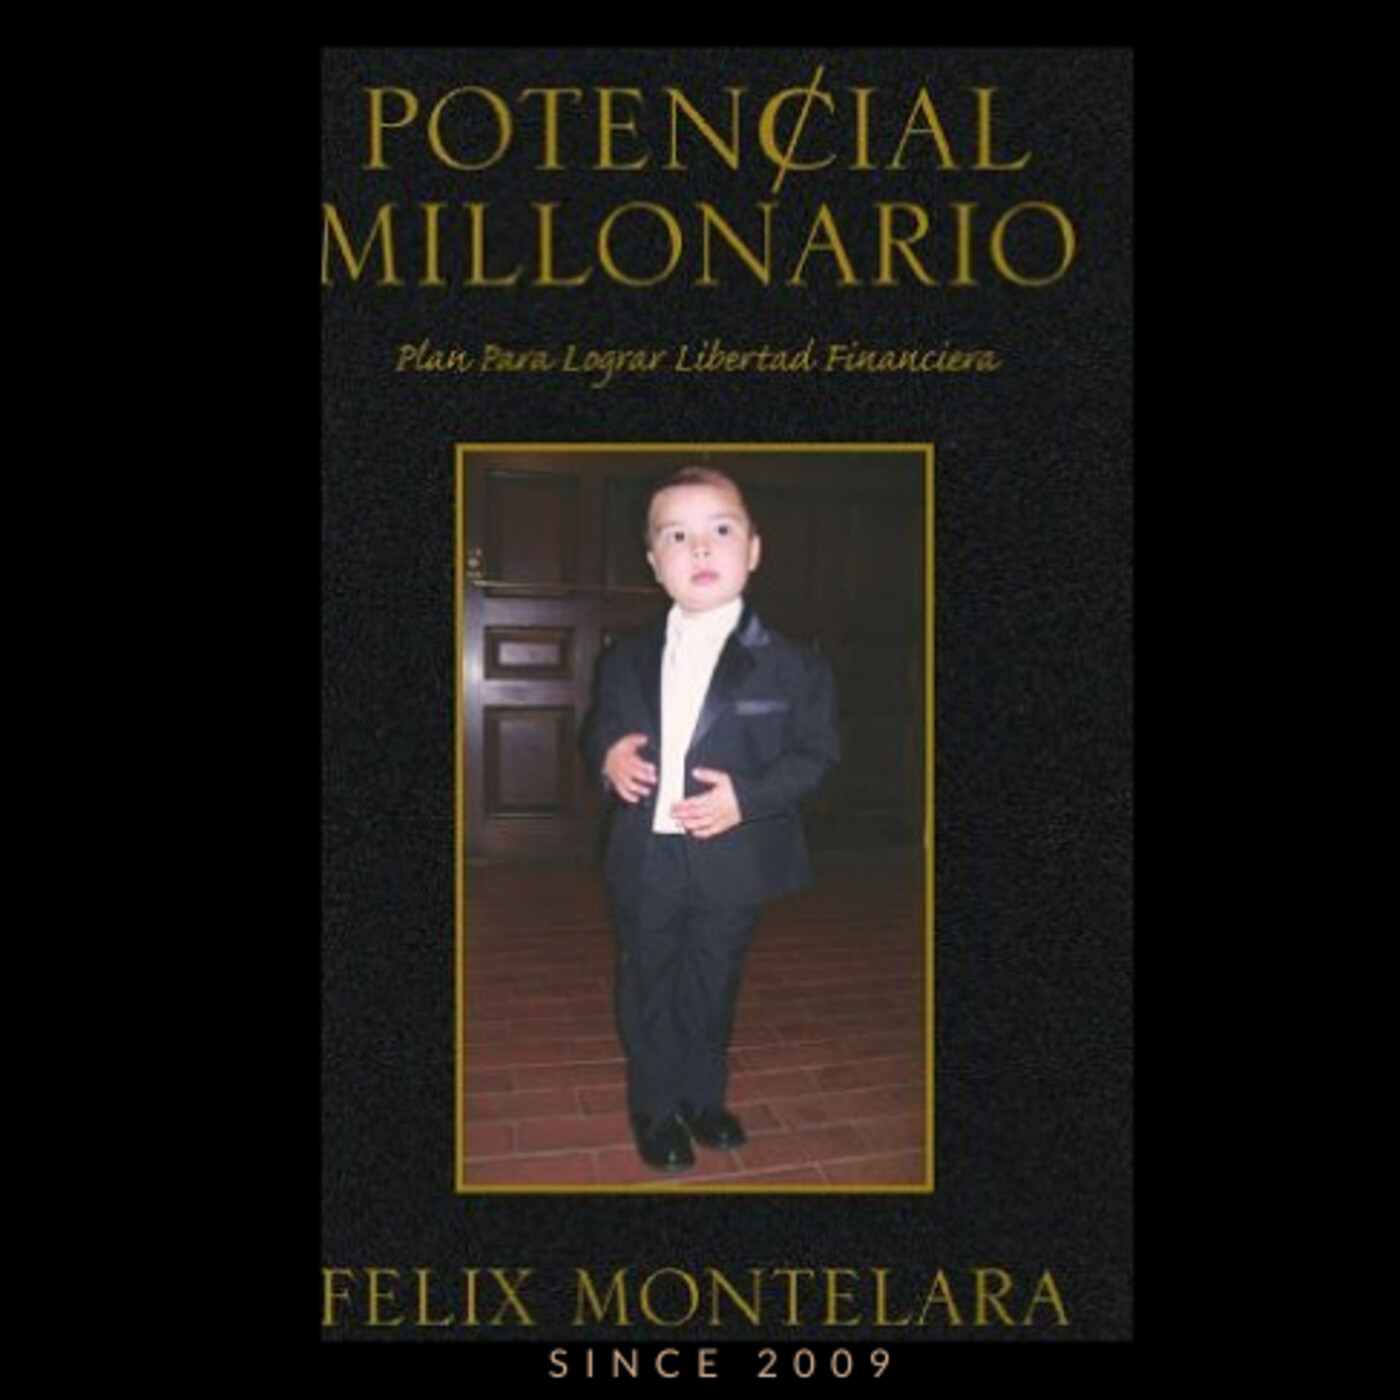 Gaste menos de lo que usted se gana cada mes Potencial millonario Felix Montelara